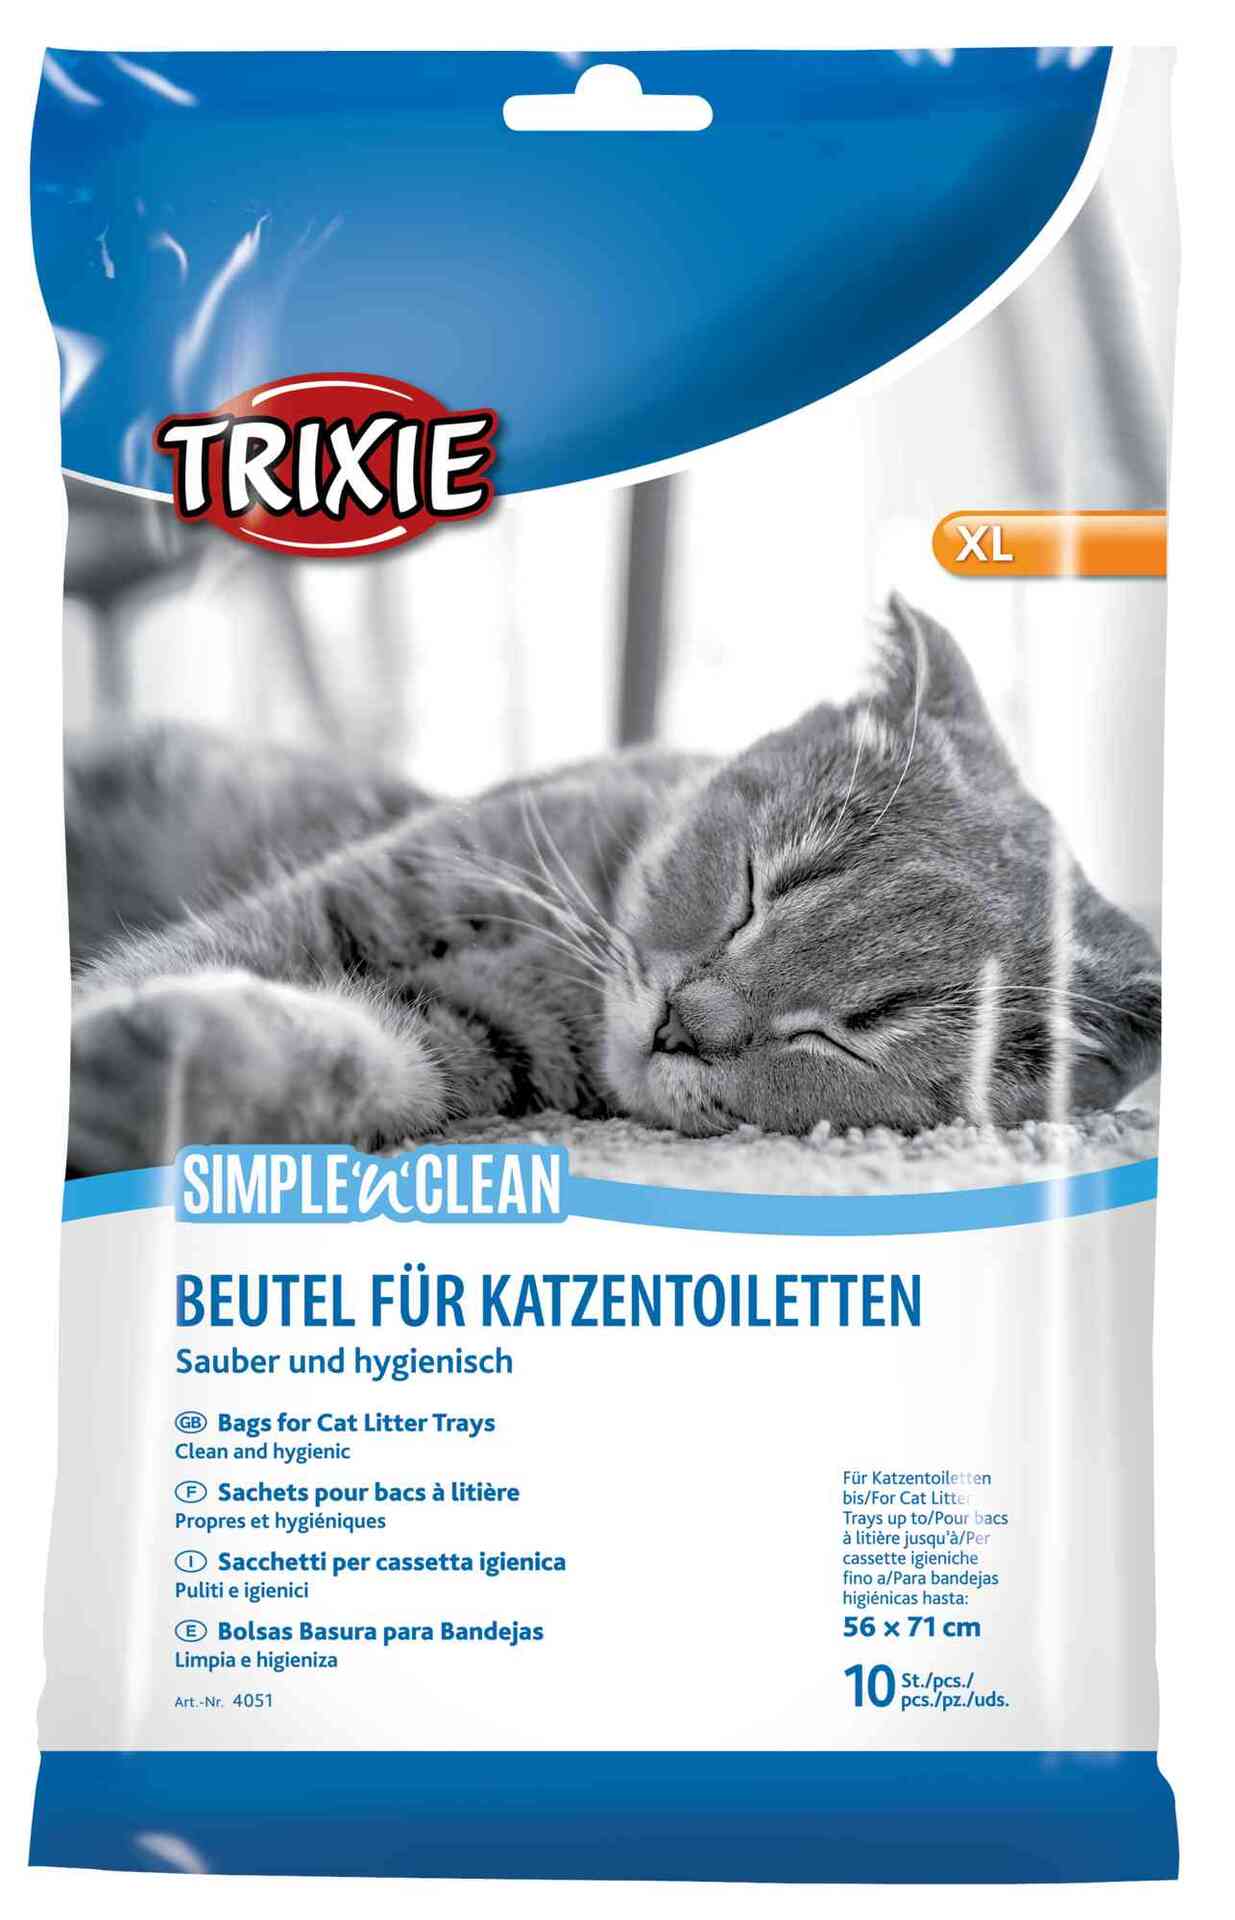 Simple’n’Clean Beutel für Katzentoiletten